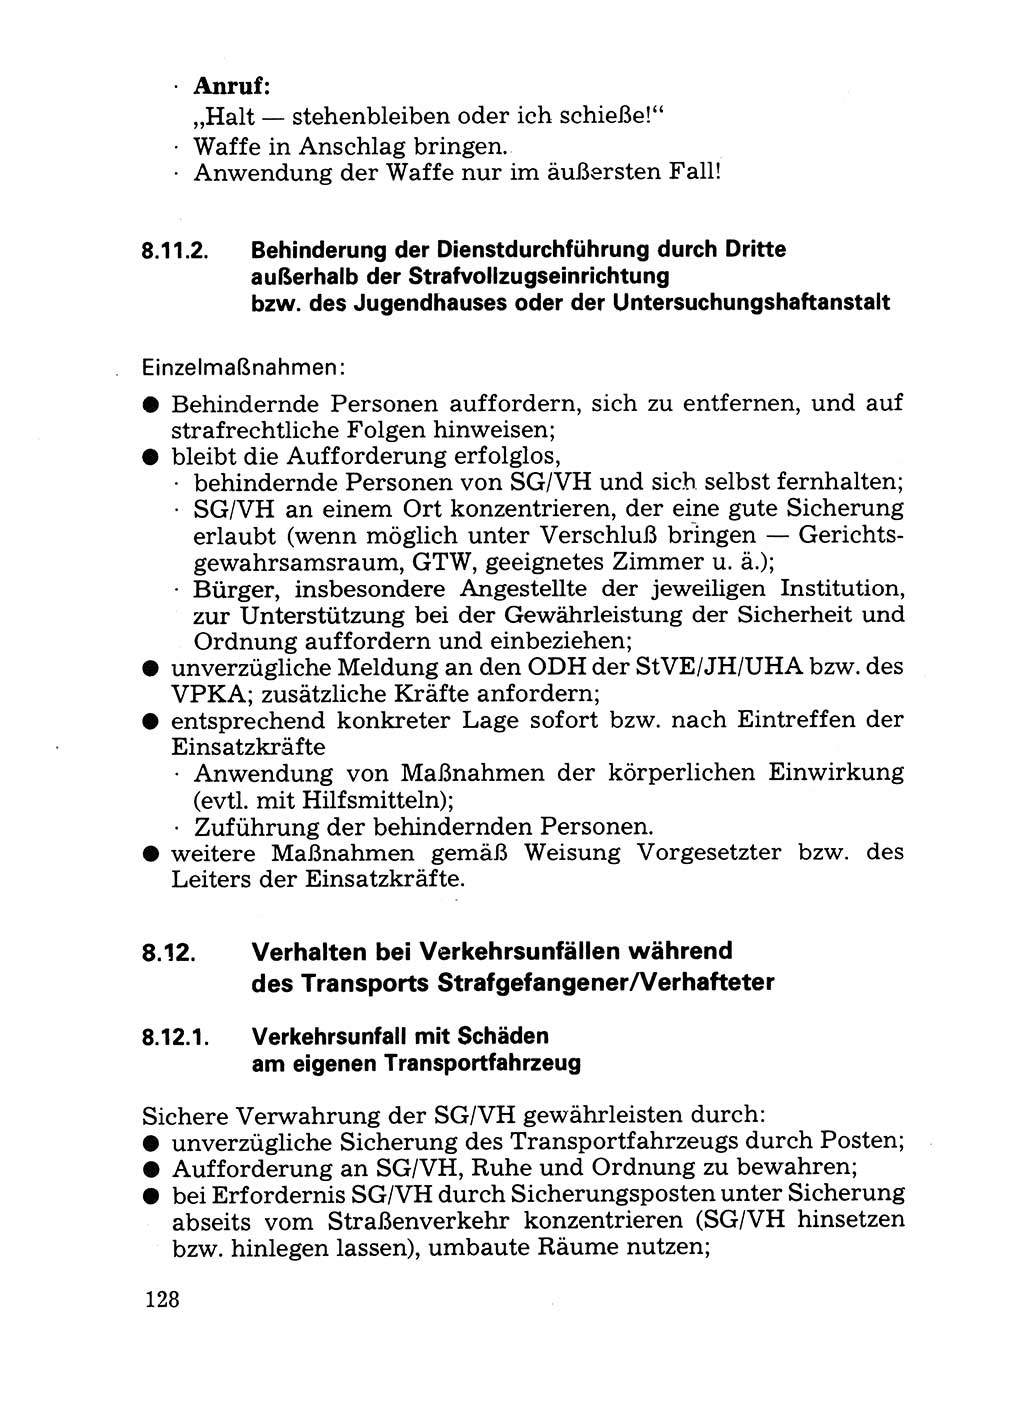 Handbuch für operative Dienste, Abteilung Strafvollzug (SV) [Ministerium des Innern (MdI) Deutsche Demokratische Republik (DDR)] 1981, Seite 128 (Hb. op. D. Abt. SV MdI DDR 1981, S. 128)